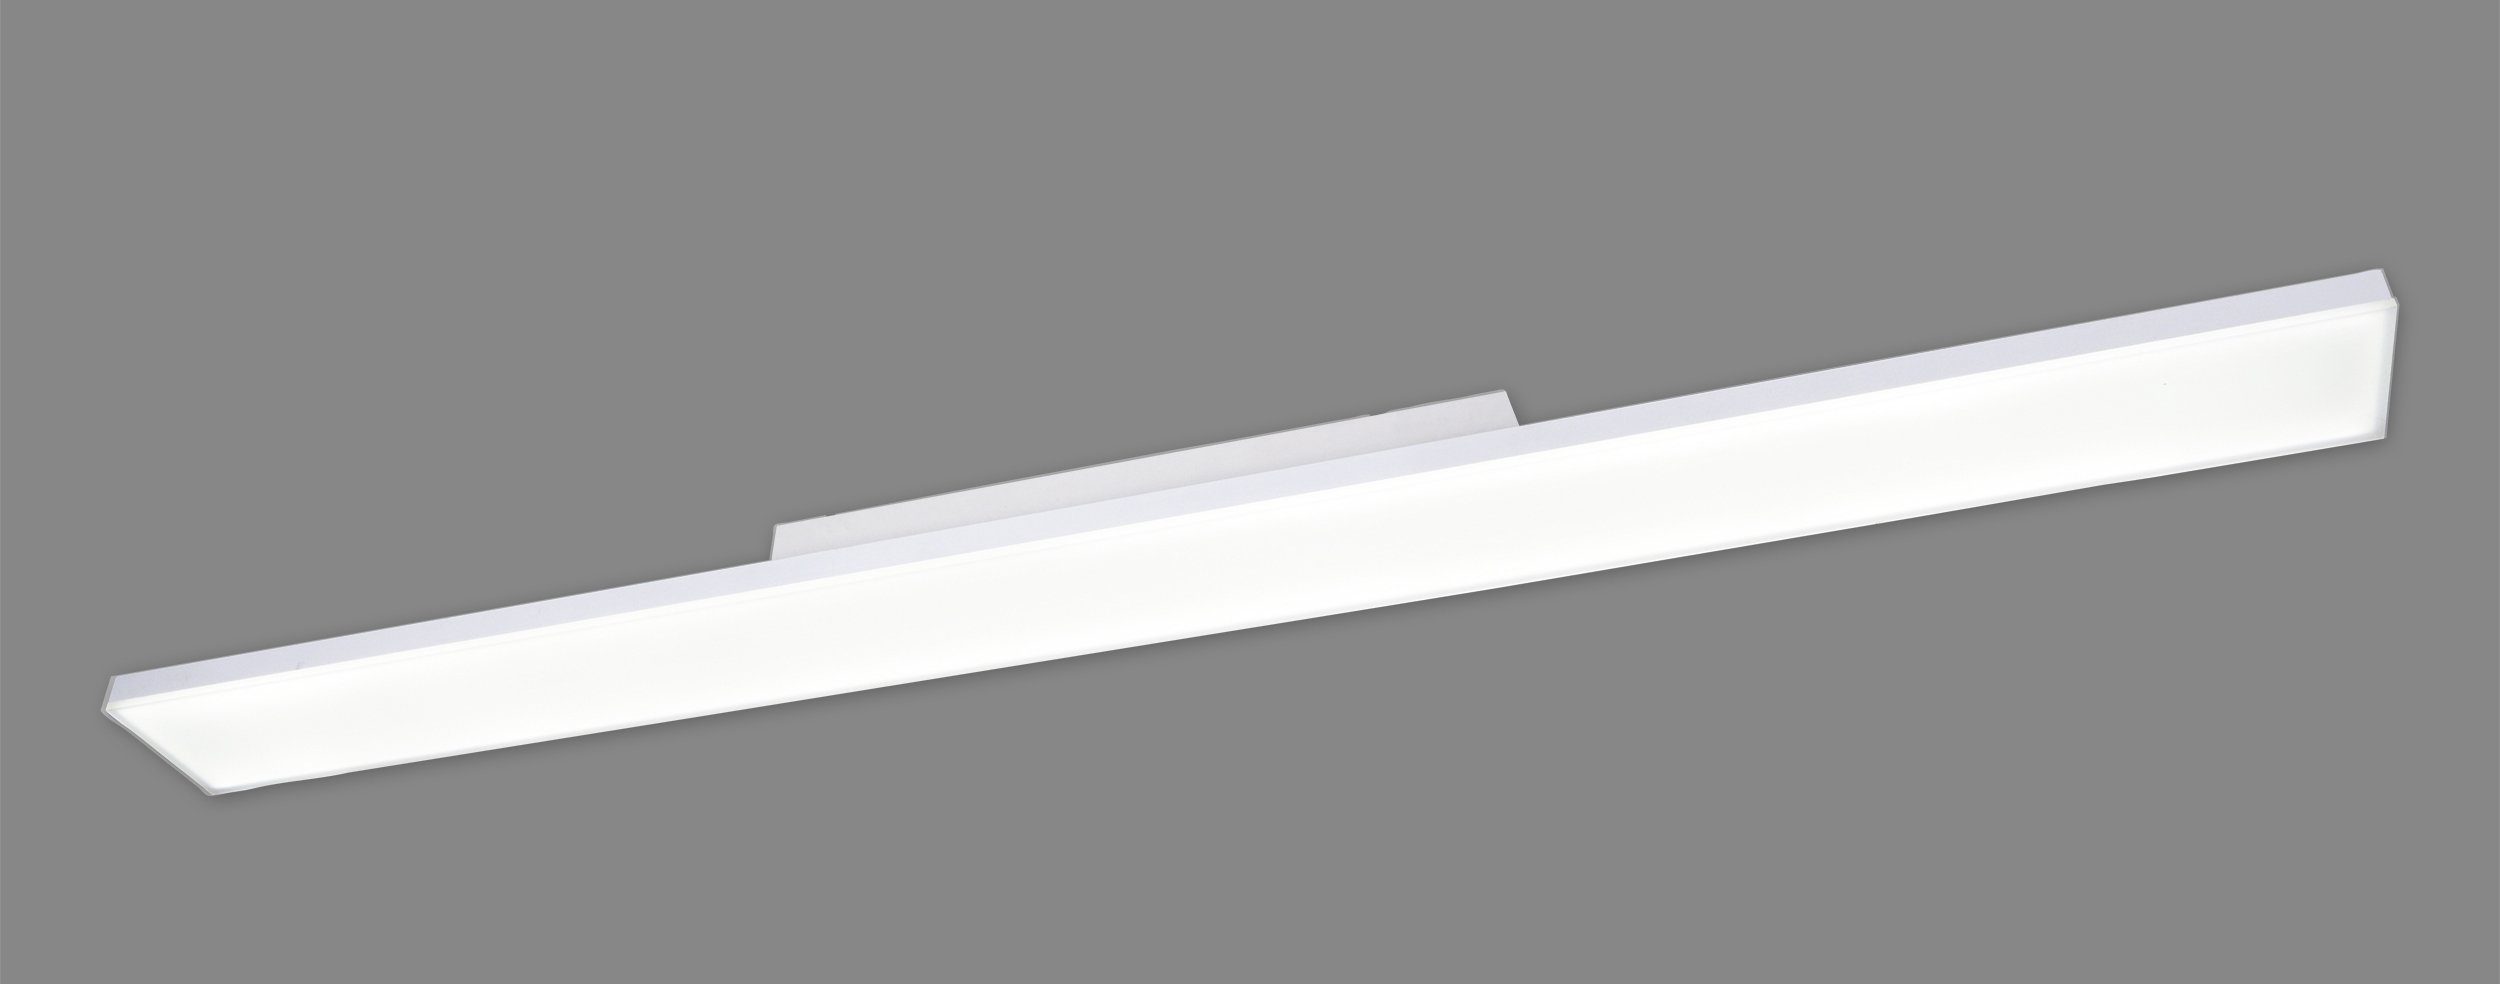 G Dimmbar, LED Fernbedienung, Carente, CCT, Effizienzklasse: Nachlichtfunktion, Nachtlichtfunktion, Panel näve LED integriert, Warmweiß, Dimmfunktion, Kaltweiß, fest